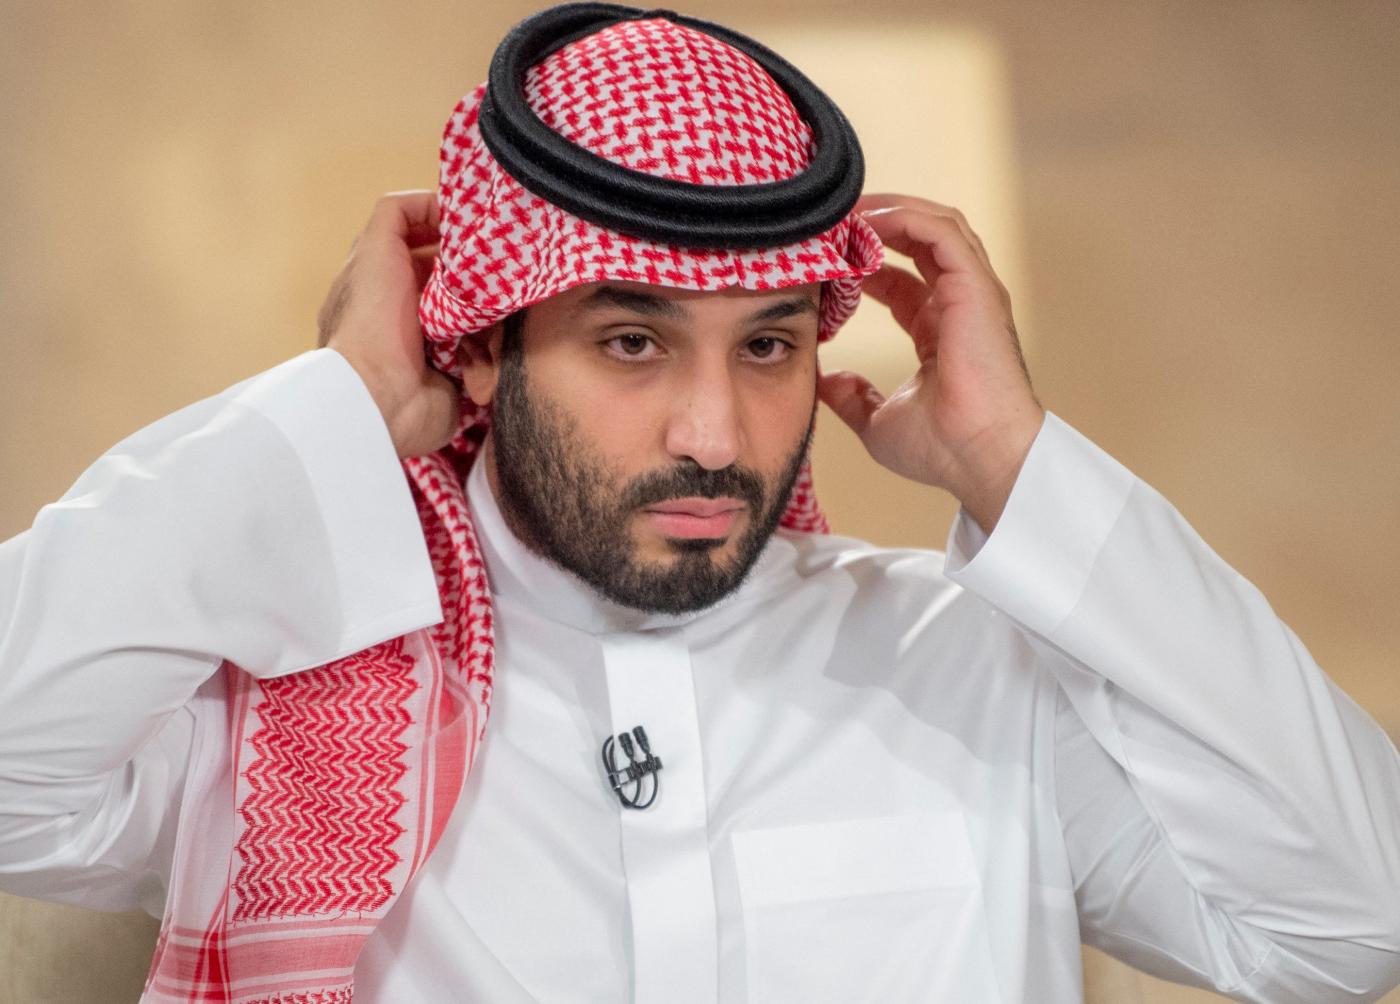 ديفيد أوتاوي الخبير في الشؤون السعودية يقول إن محمد بن سلمان يسعى بجد لإصلاح الأضرار التي لحقت بسمعته watanserb.com